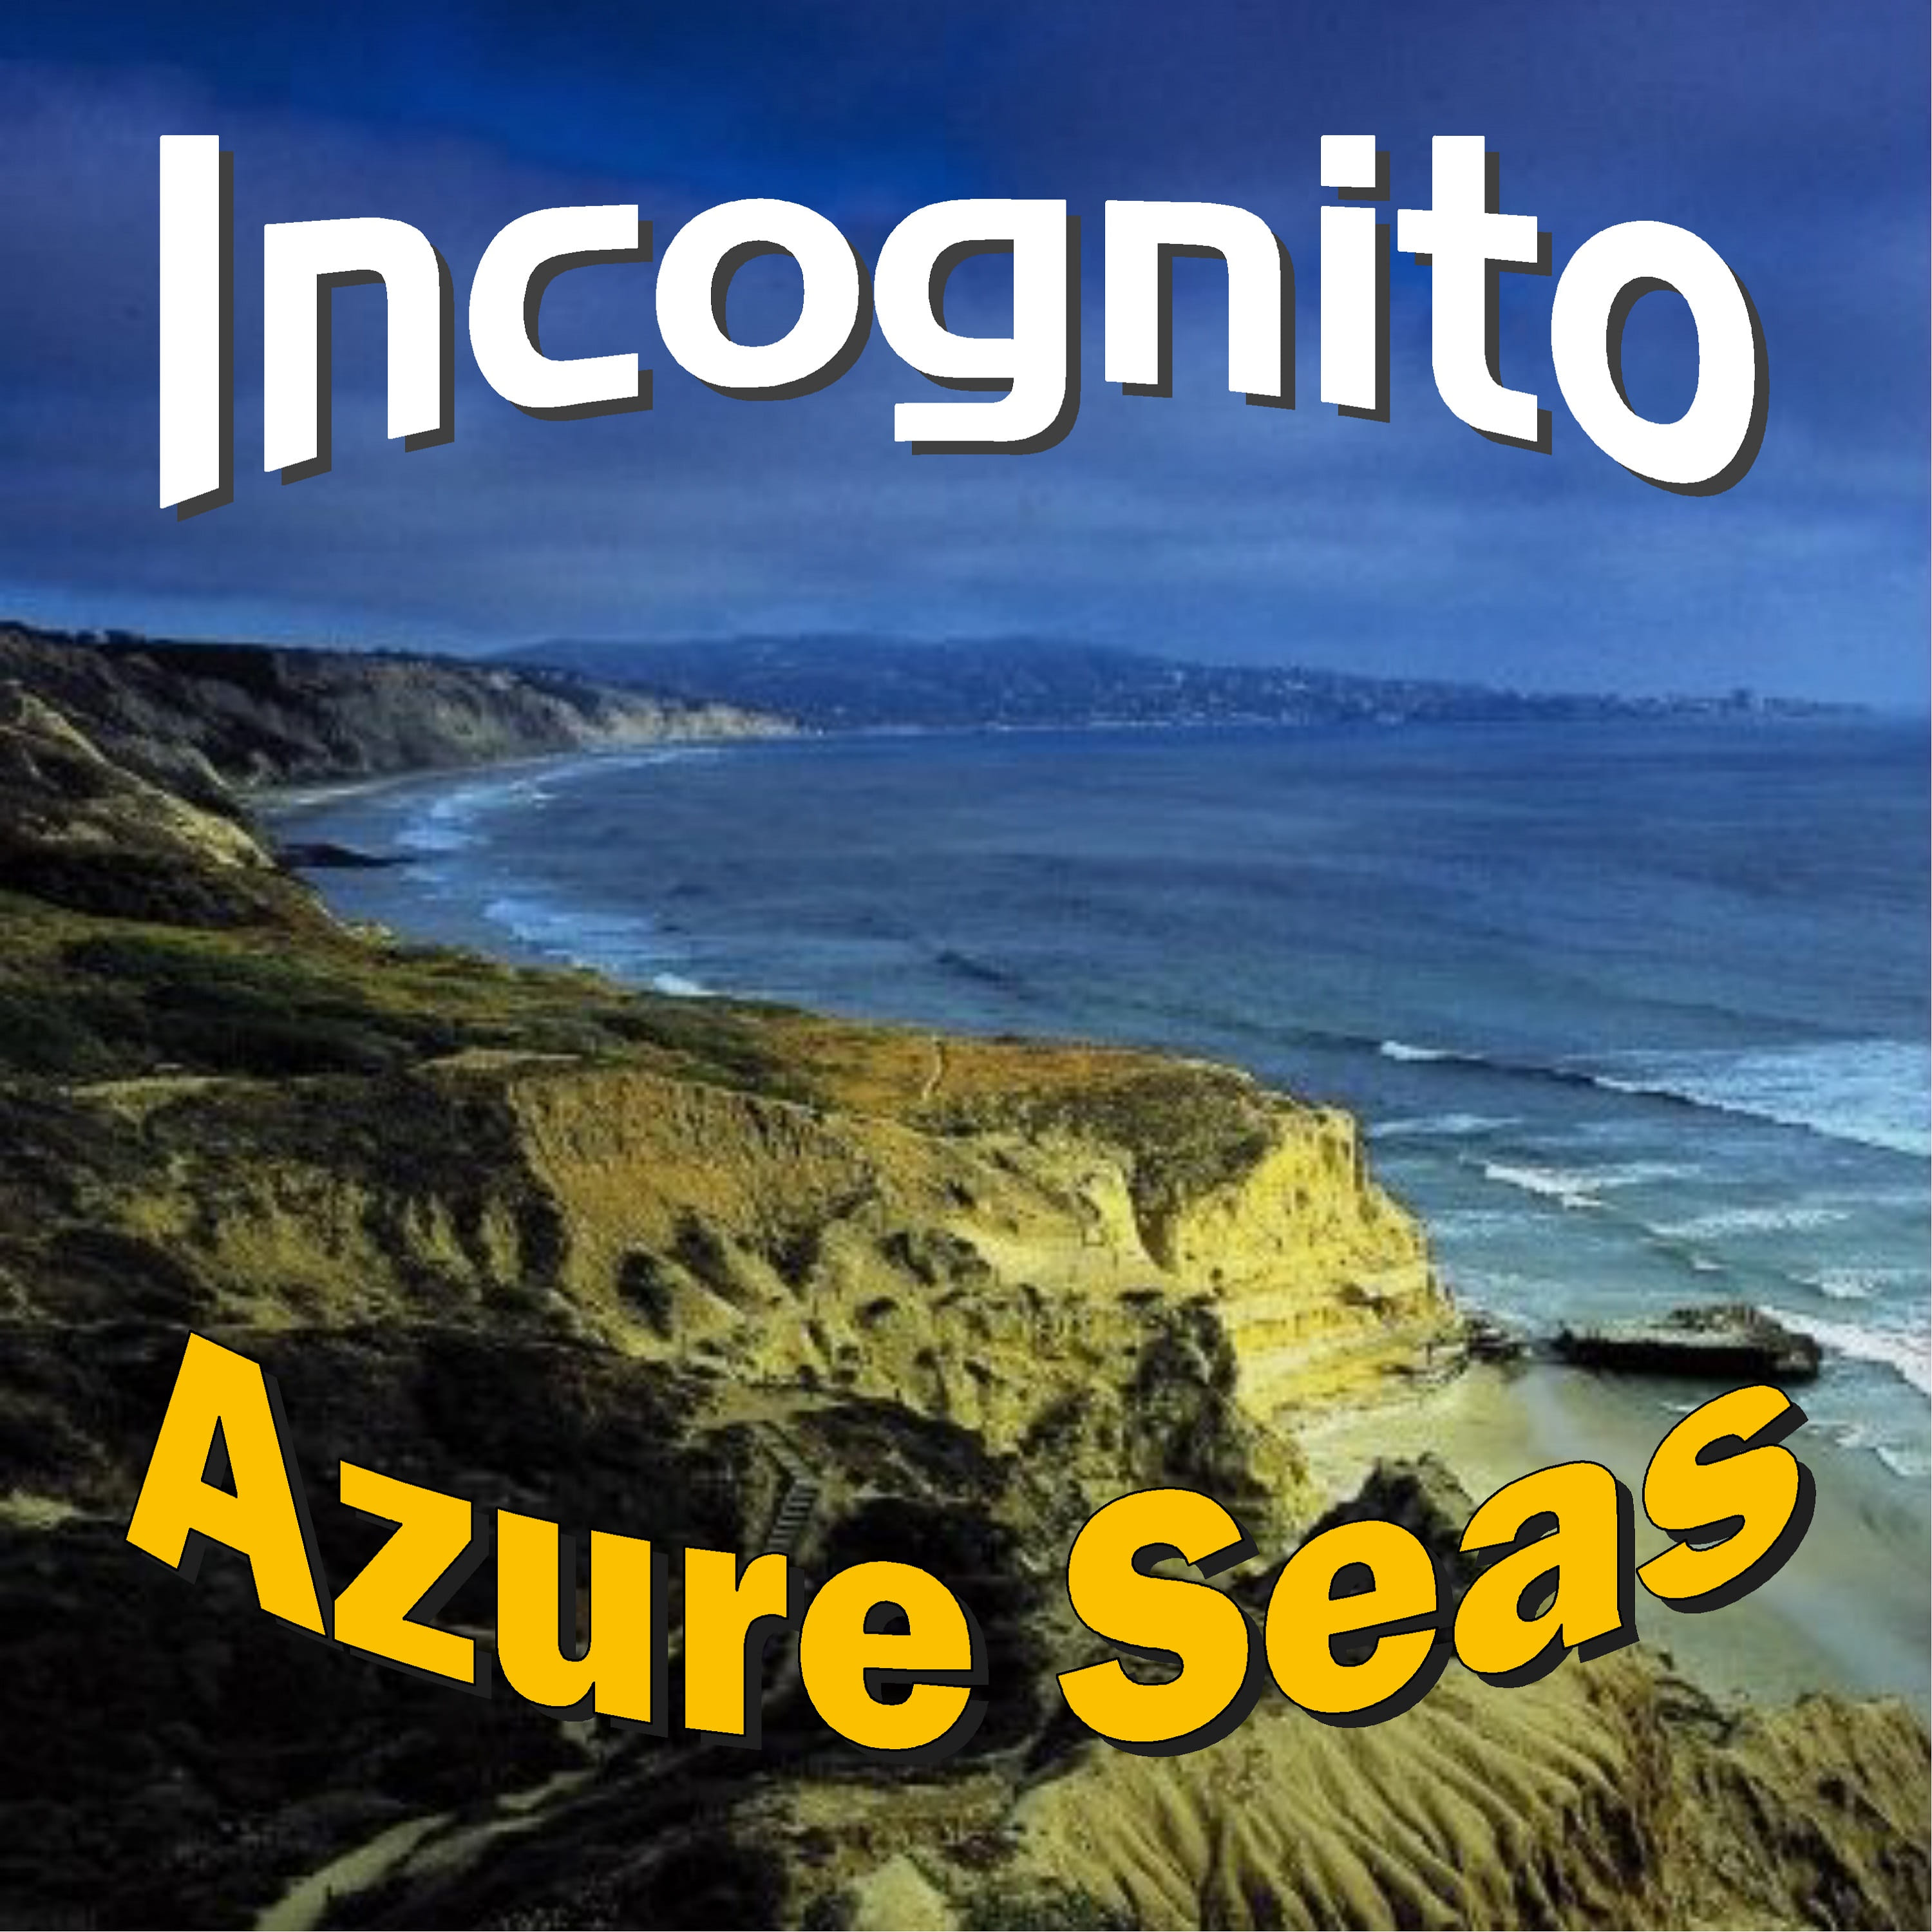 Incognito-Azure Seas